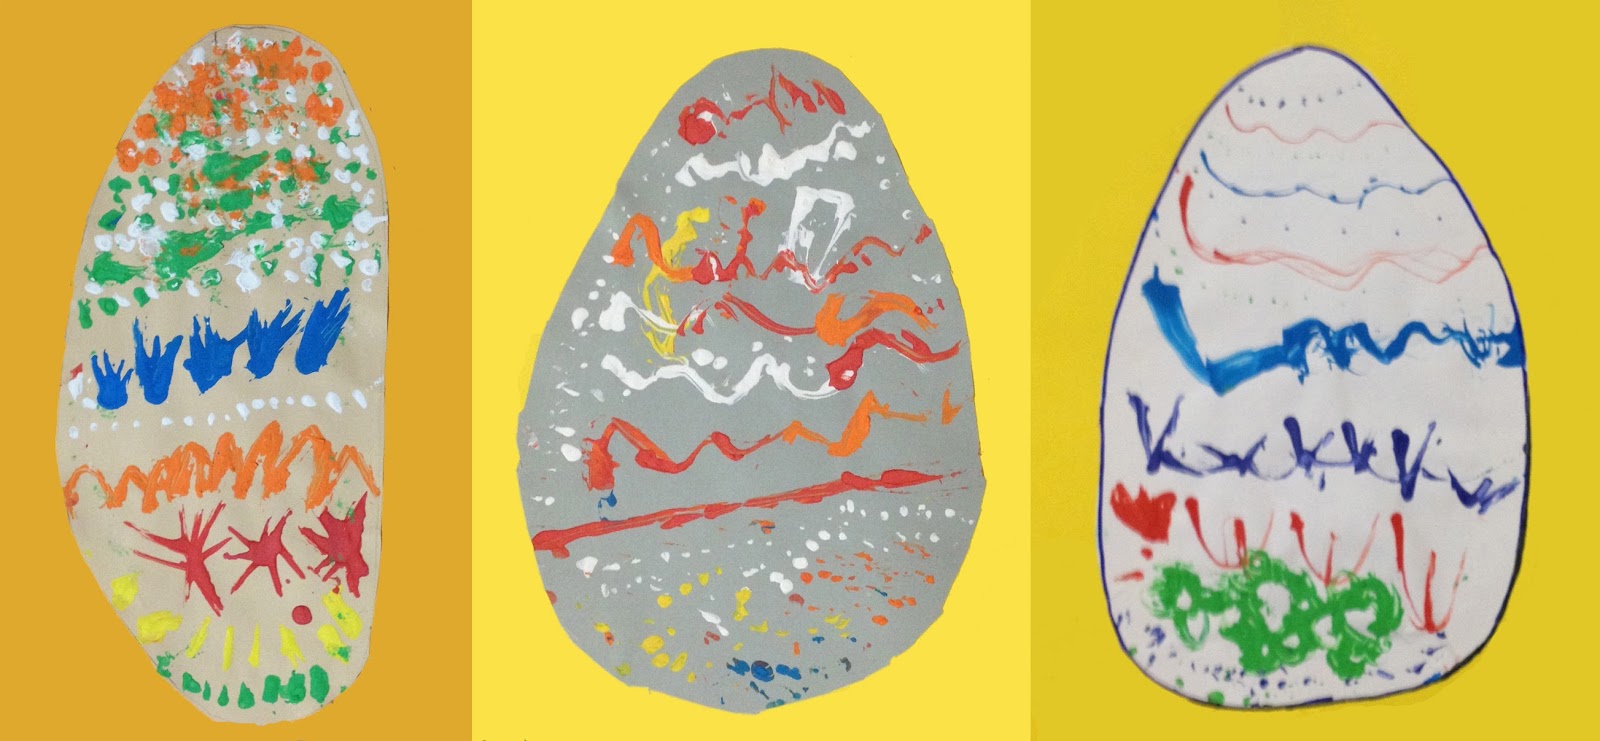 Tutte le opere che vedete sono state fatte dal gruppo di bambini di 5 anni condotti dalla loro maestra Magdalena Lato e raccolte in un catalogo di uova